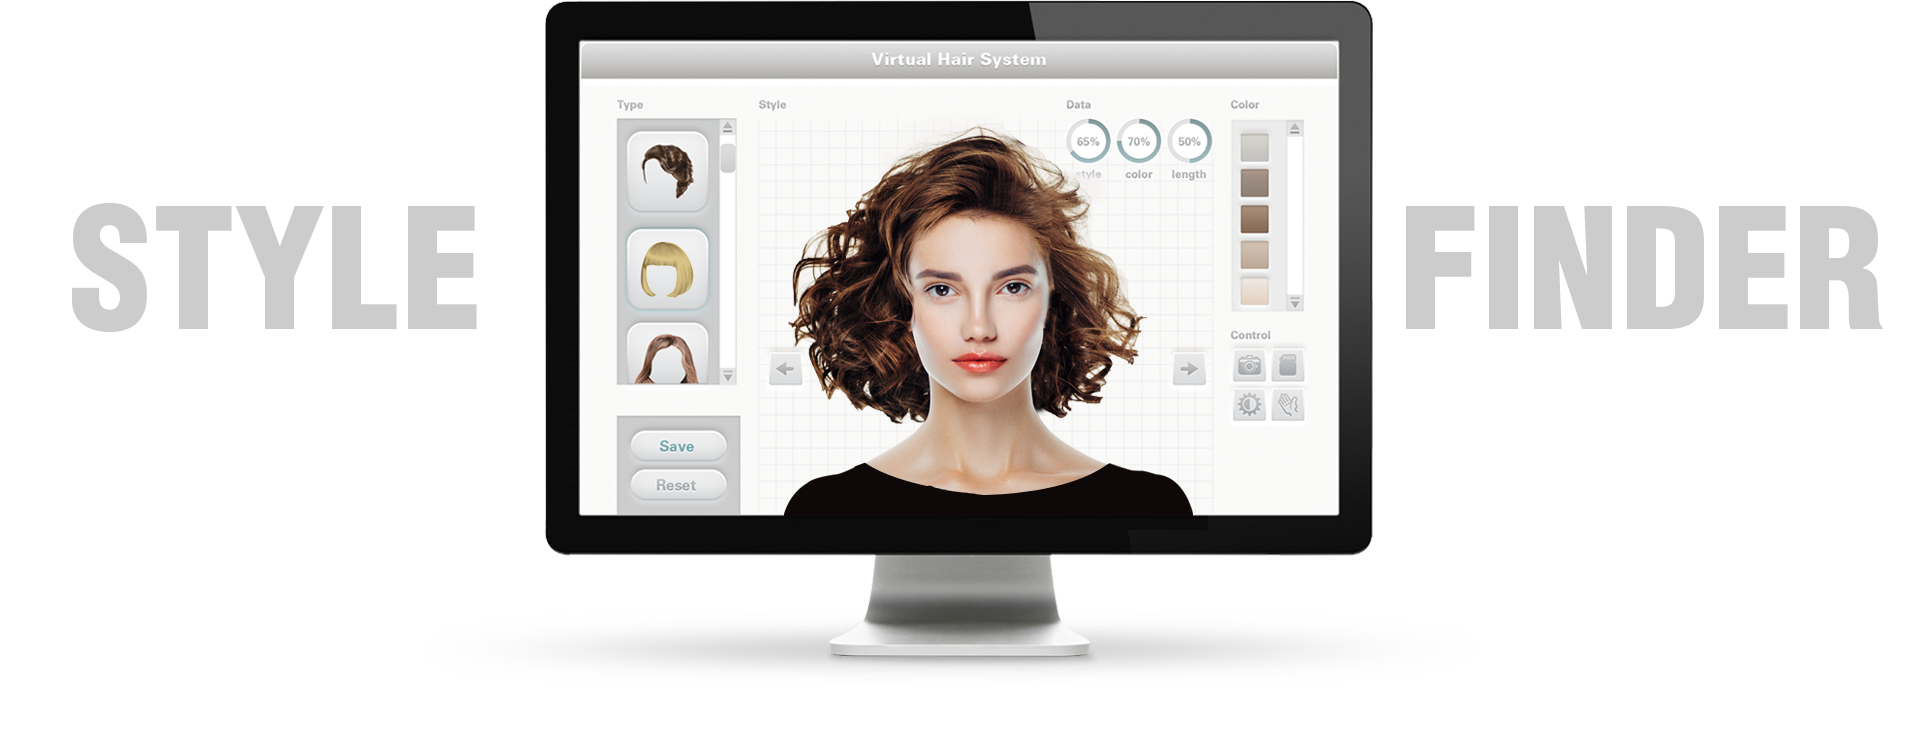 Virtual hair system | HI-MO